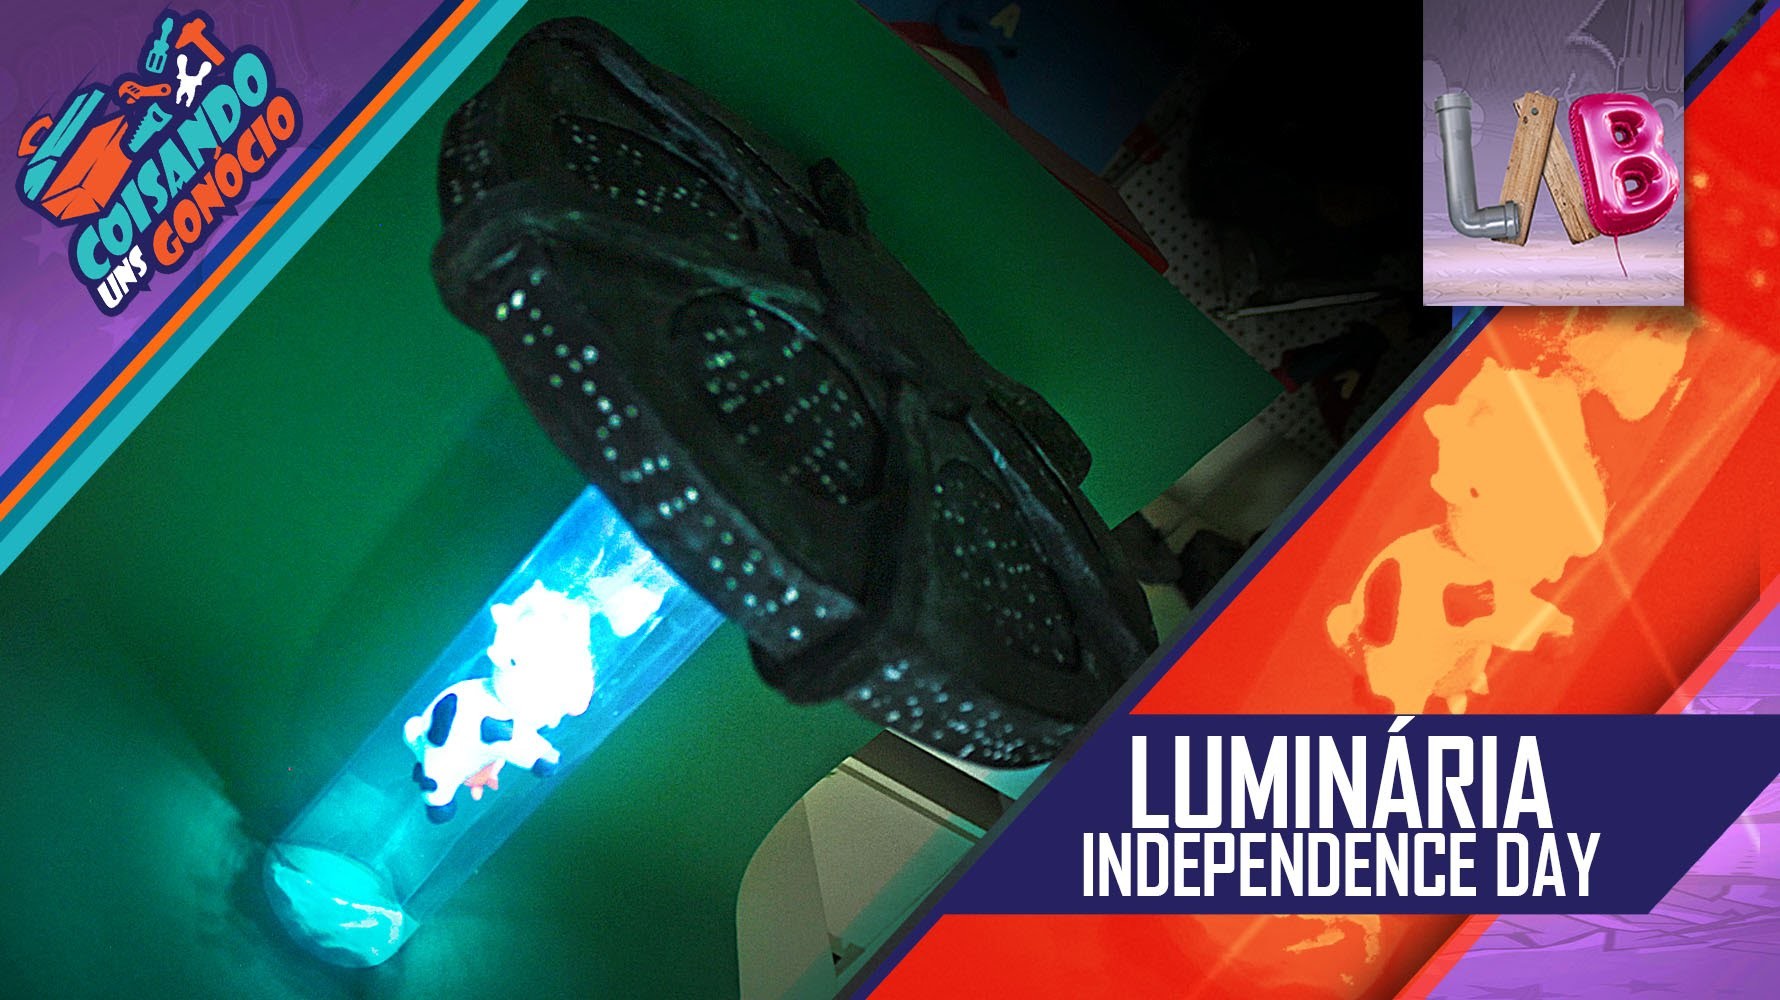 DIY: Luminária - Independence Day - CUG#24